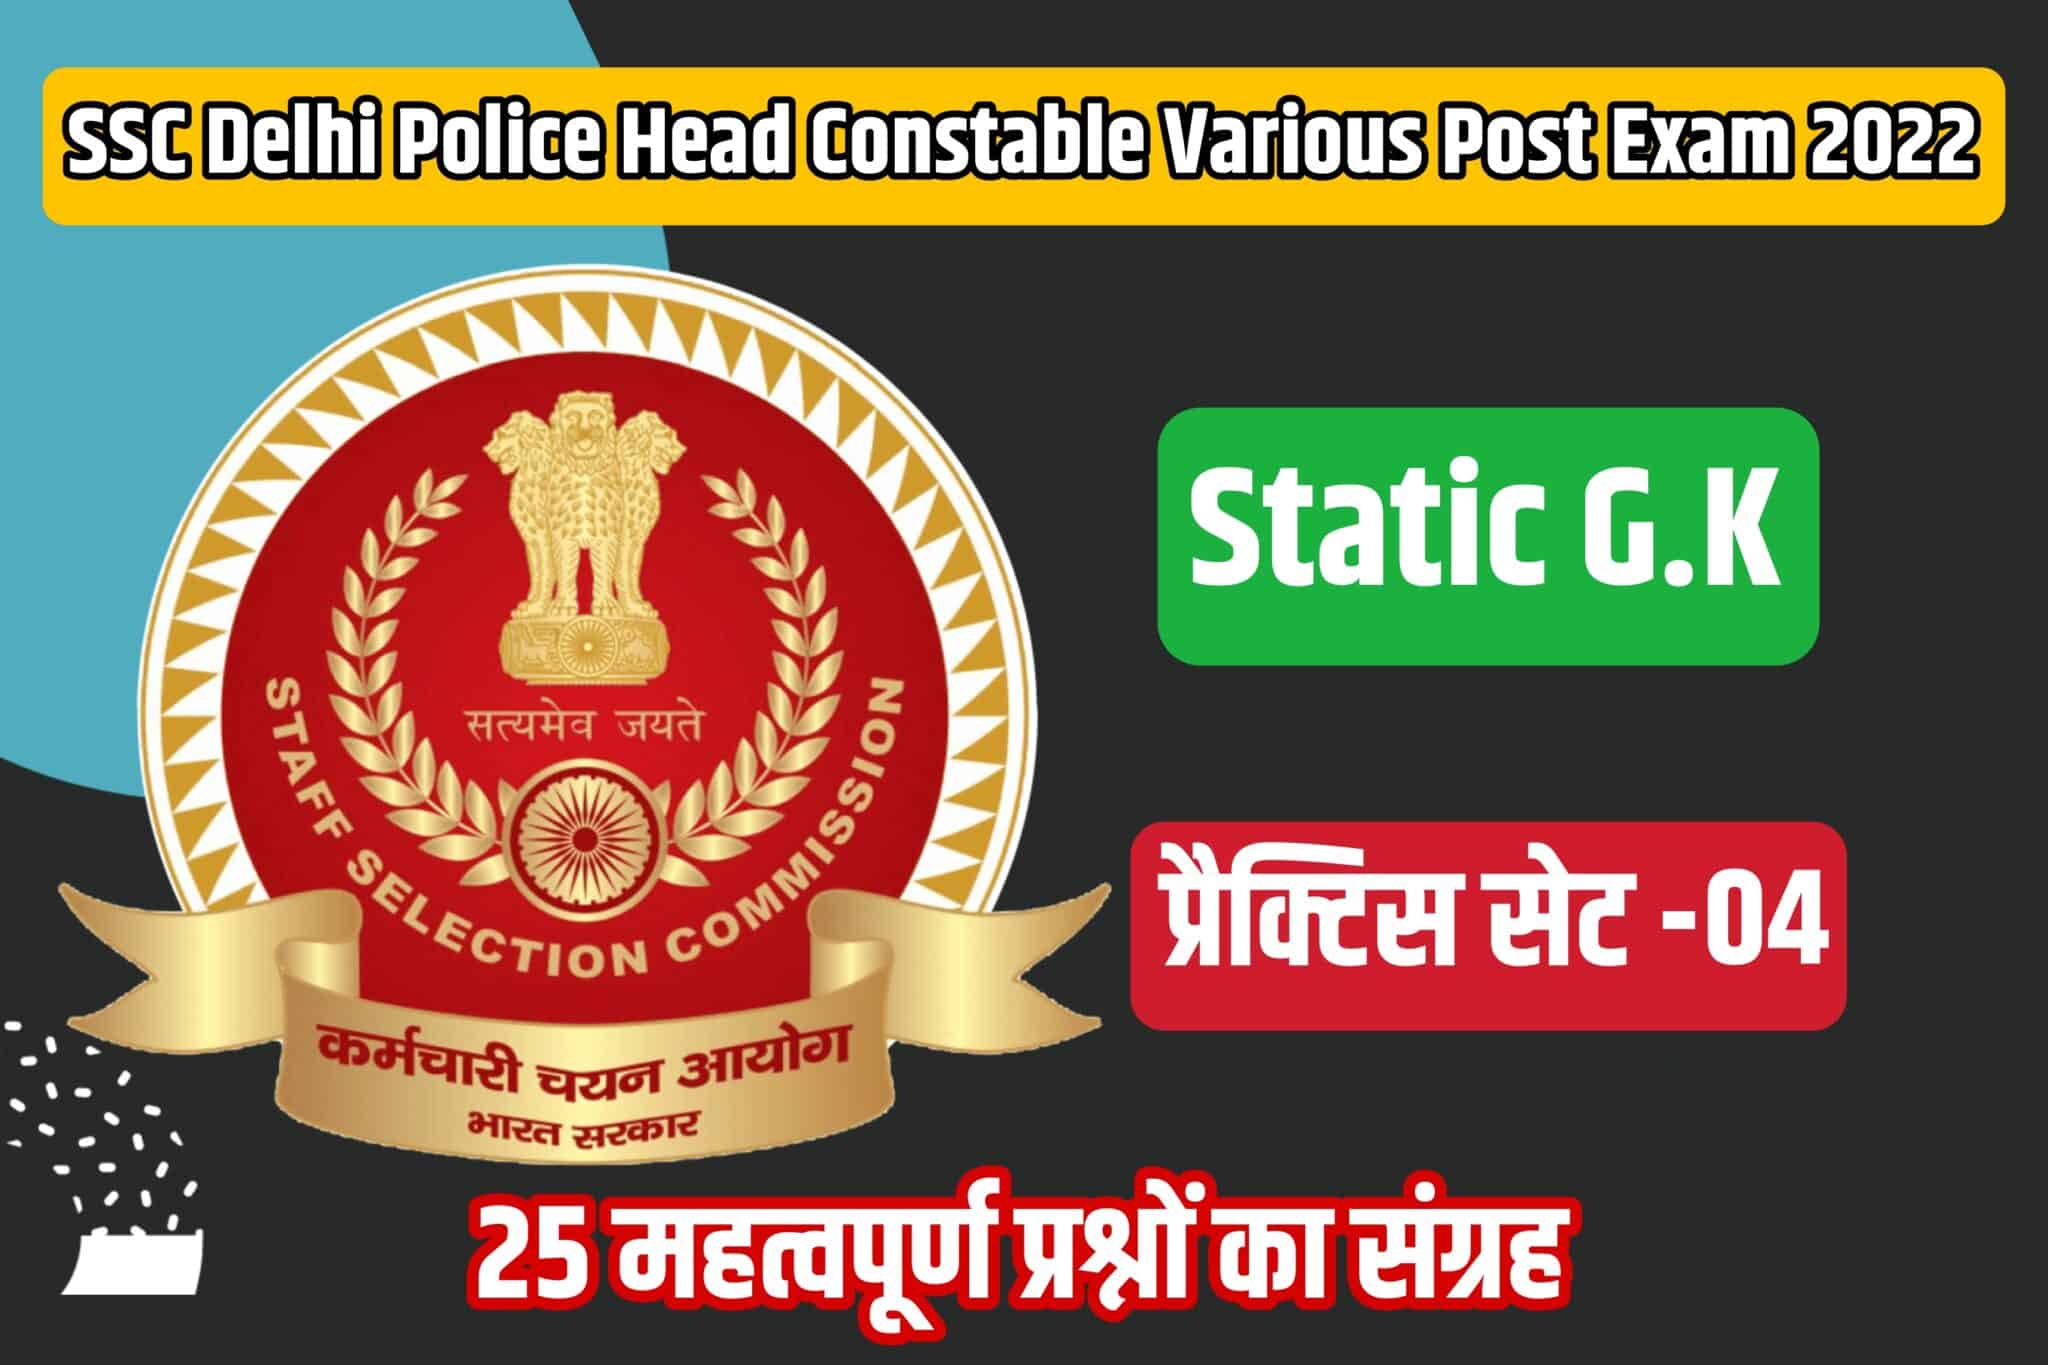 SSC Delhi Police HC Various Post Exam Static GK Practice Set 04 | परीक्षा में शामिल होने से पूर्व अवश्य पढ़ लें ये 25 मुख्य प्रश्न